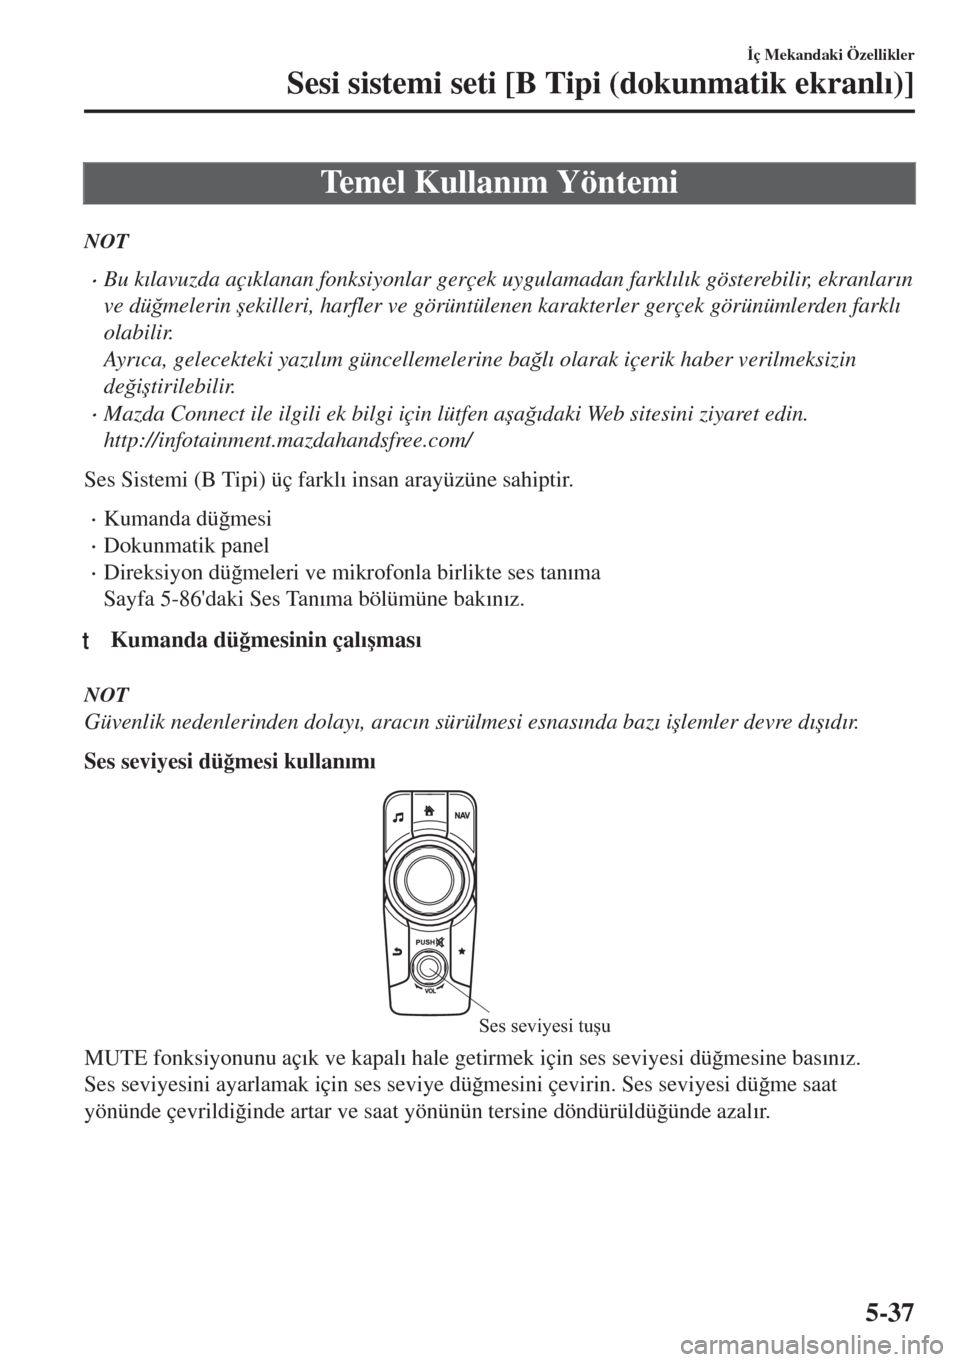 MAZDA MODEL MX-5 2017  Kullanım Kılavuzu (in Turkish) Temel Kullan�Õm Yöntemi
NOT
•Bu k�Õlavuzda aç�Õklanan fonksiyonlar gerçek uygulamadan farkl�Õl�Õk gösterebilir, ekranlar�Õn
ve dü�÷melerin �úekilleri, harfler ve görüntülenen karakte